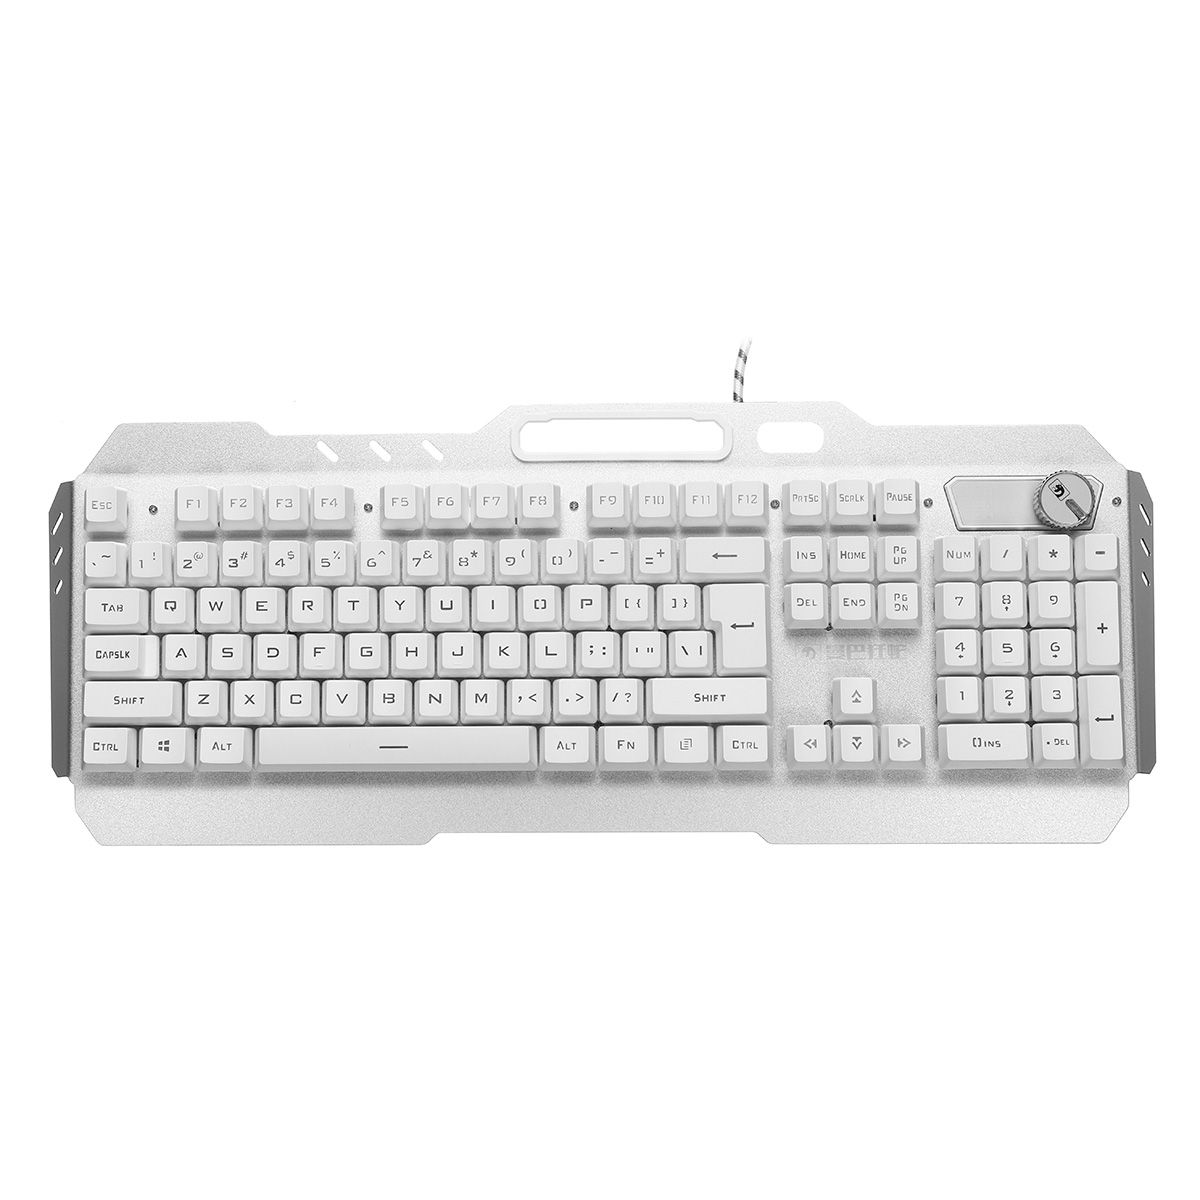 Wired-104-Keys-Keyboard--Mouse-Set-Ice-Blue-White-Backlit-Multifunction-Knob-Gaming-Keyboard-Ergonom-1740761